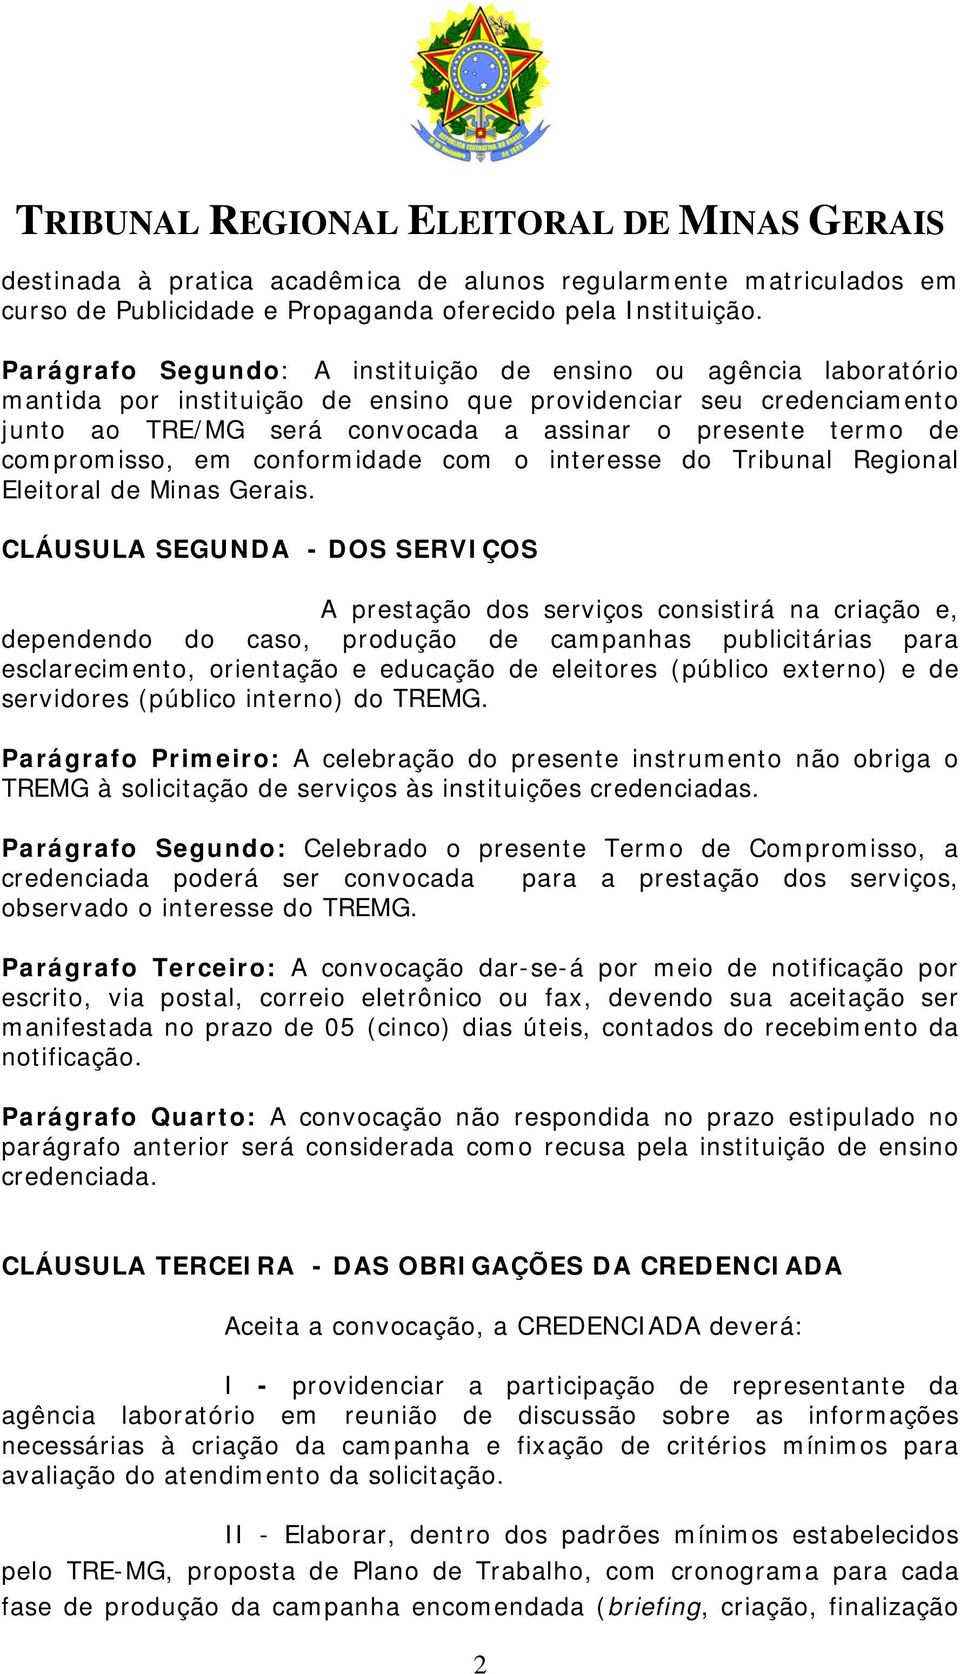 compromisso, em conformidade com o interesse do Tribunal Regional Eleitoral de Minas Gerais.